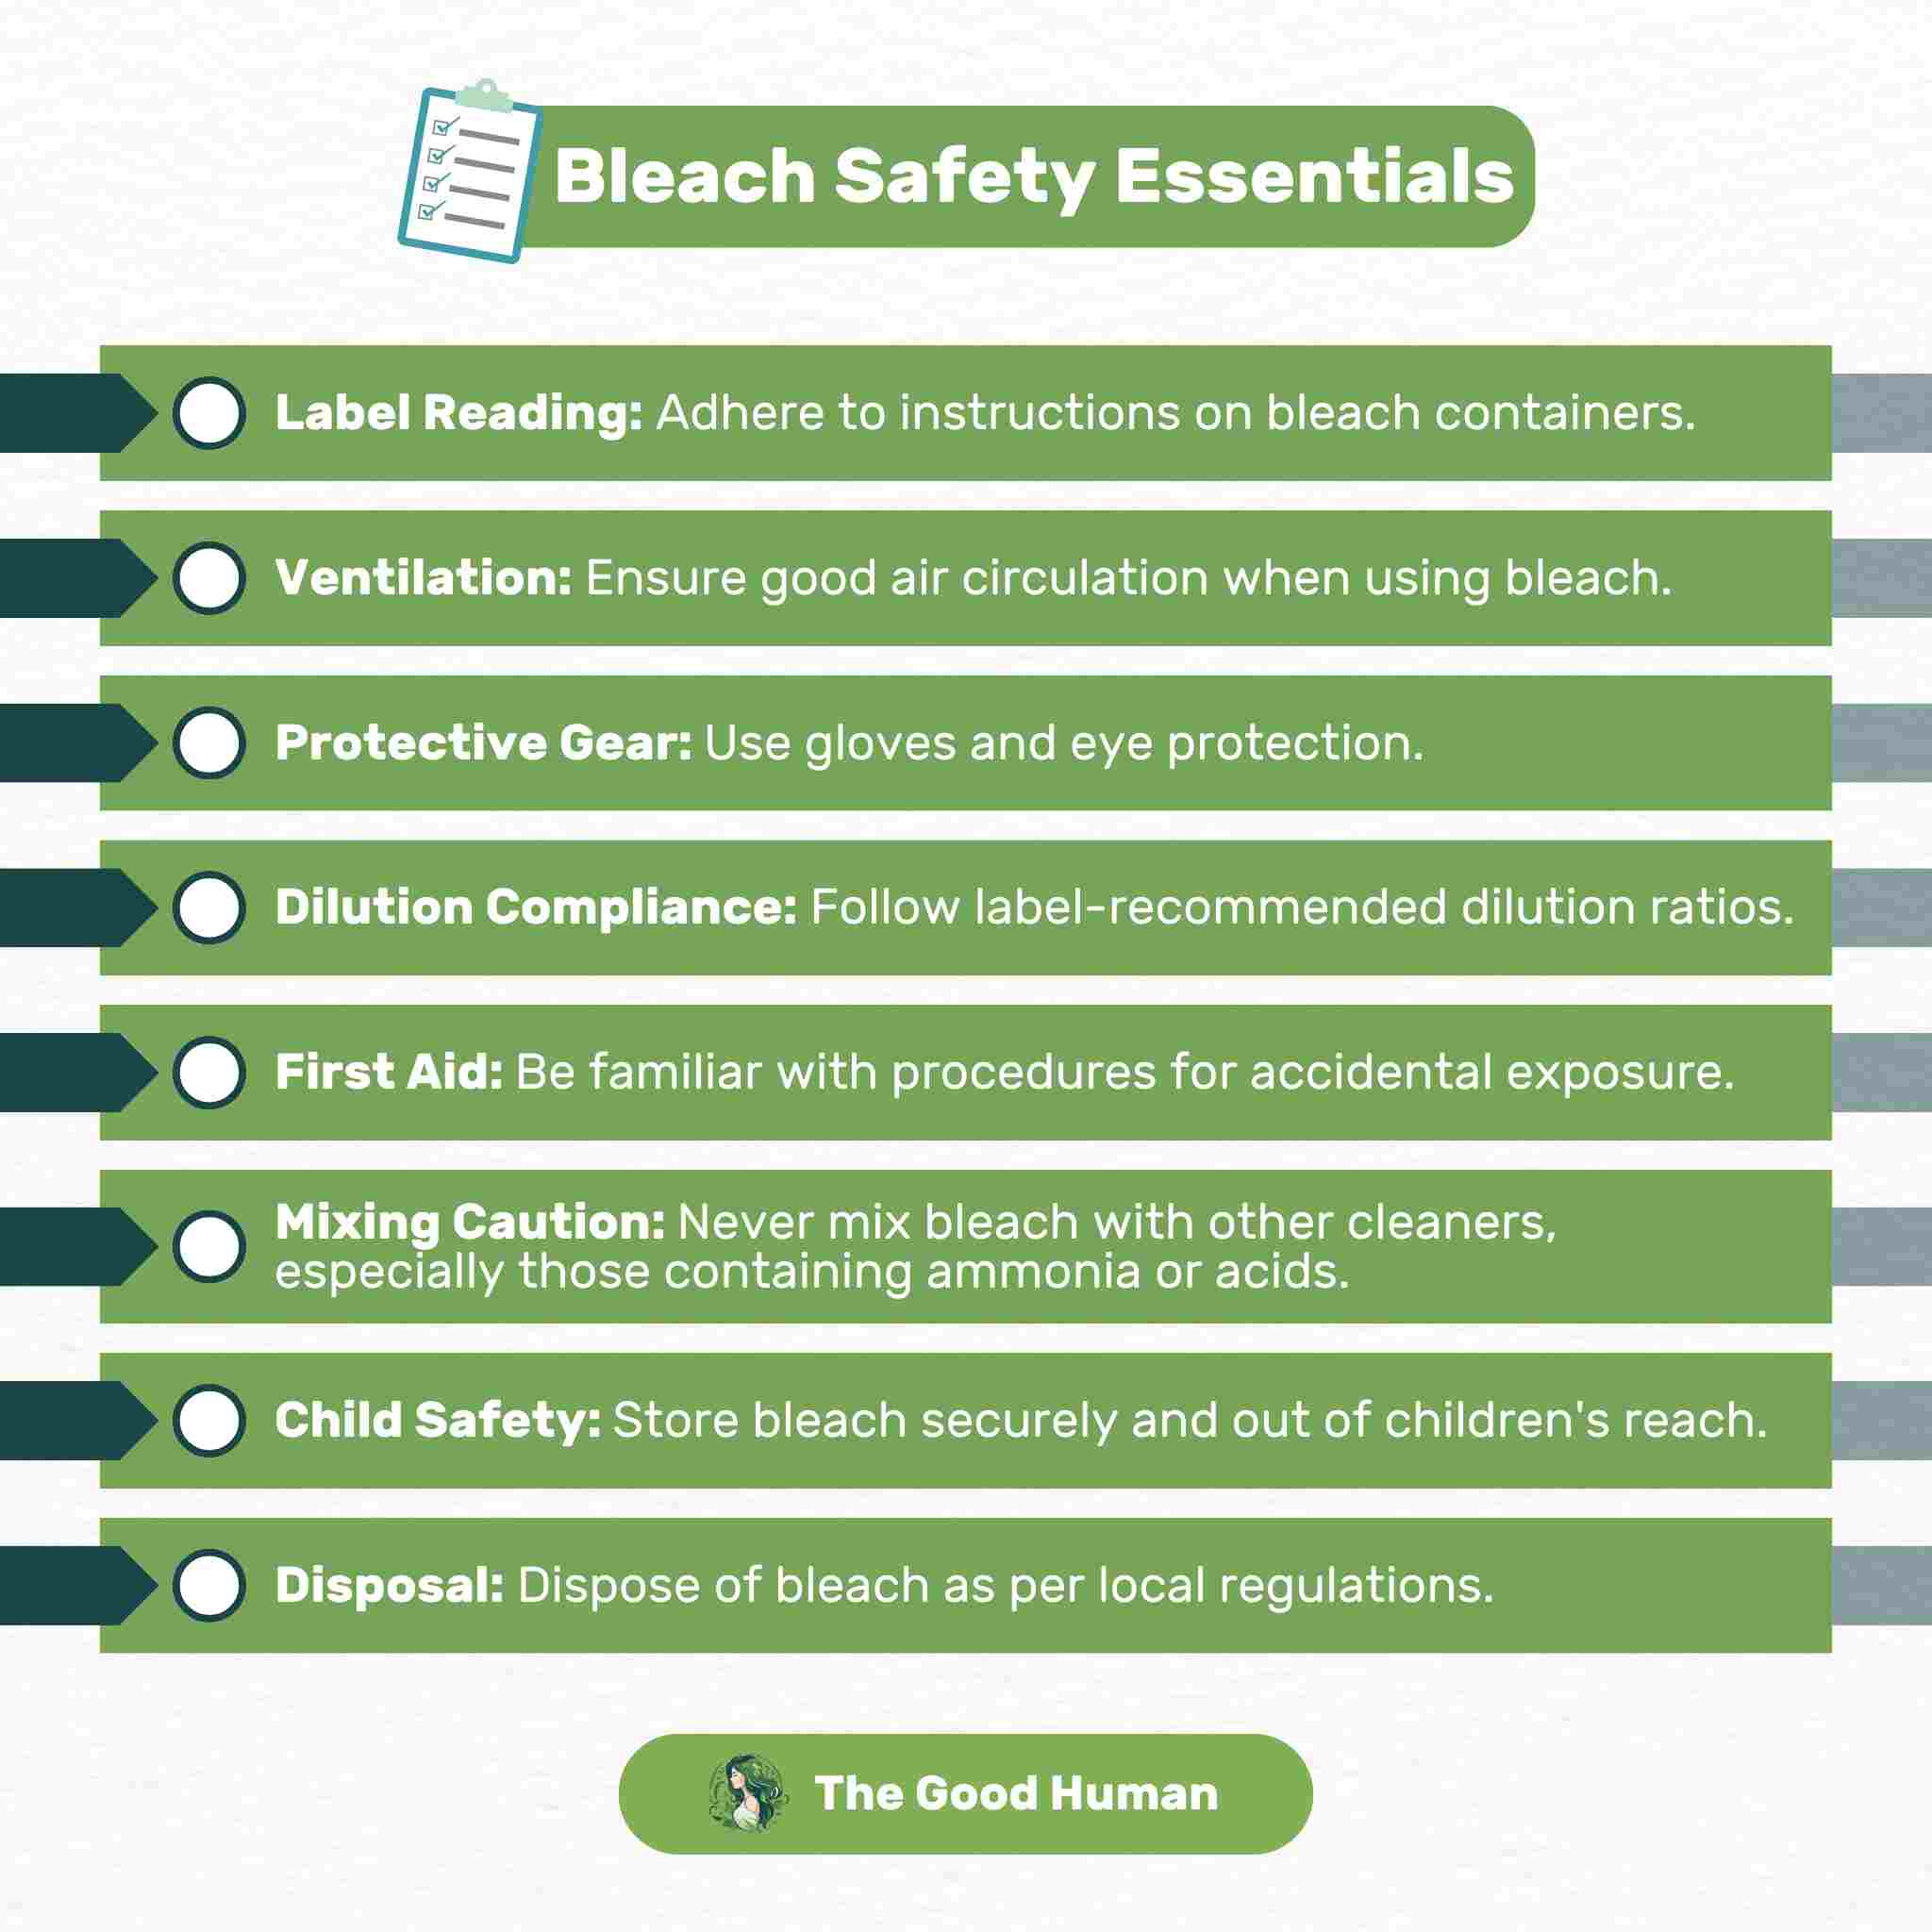 A checklist for bleach safety essentials.